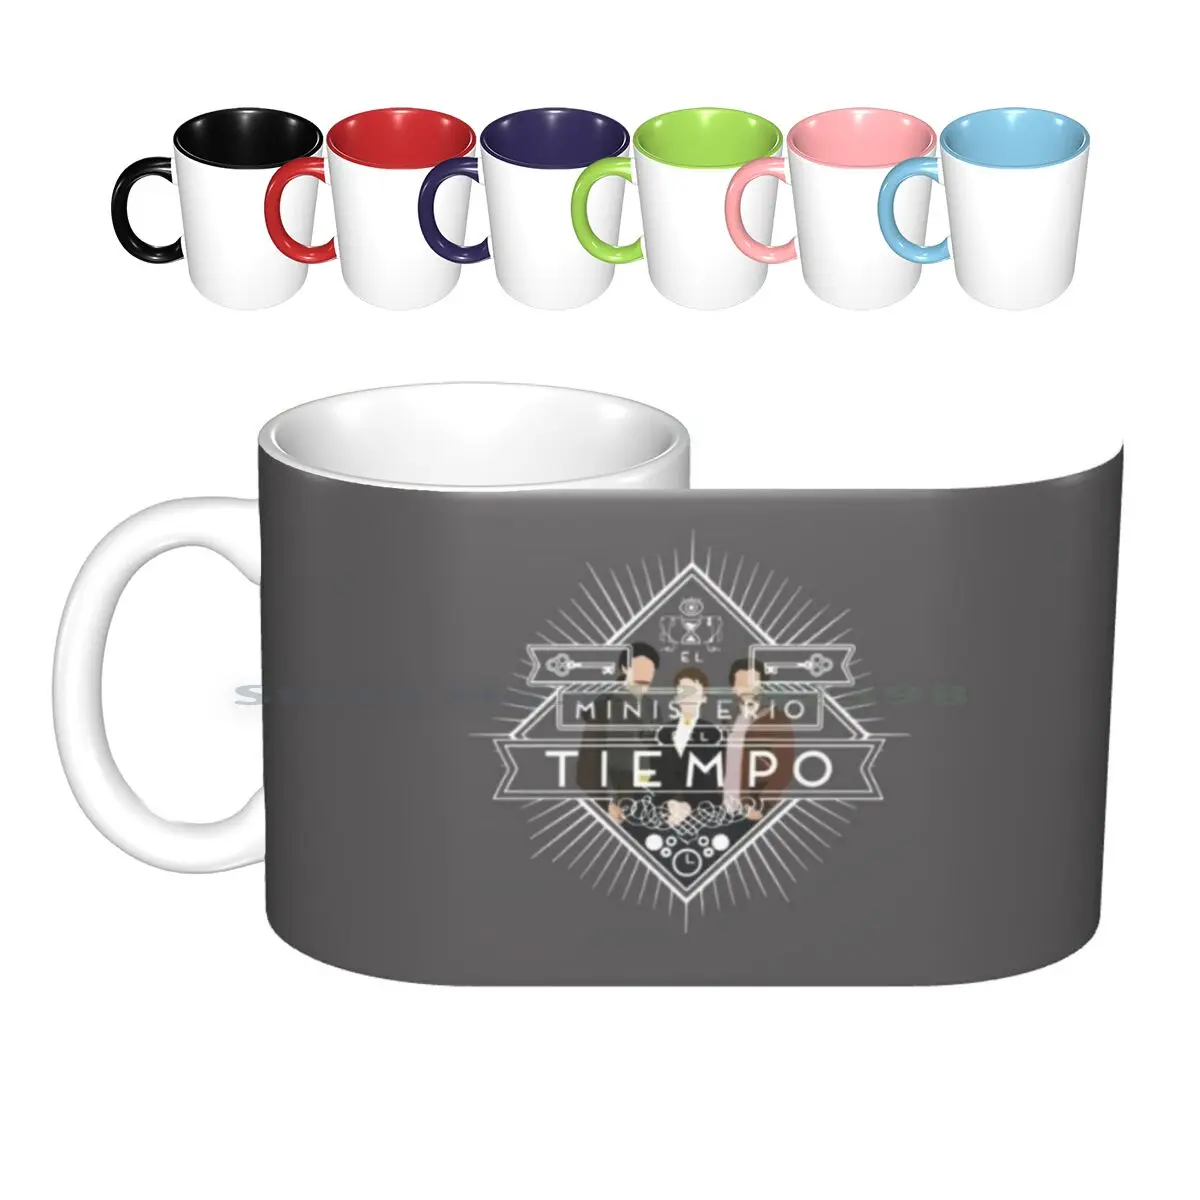 

El Ministerio Del Tiempo Ceramic Mugs Coffee Cups Milk Tea Mug El Ministerio Del Tiempo Spain Tv Fanart Colorfull Amazing